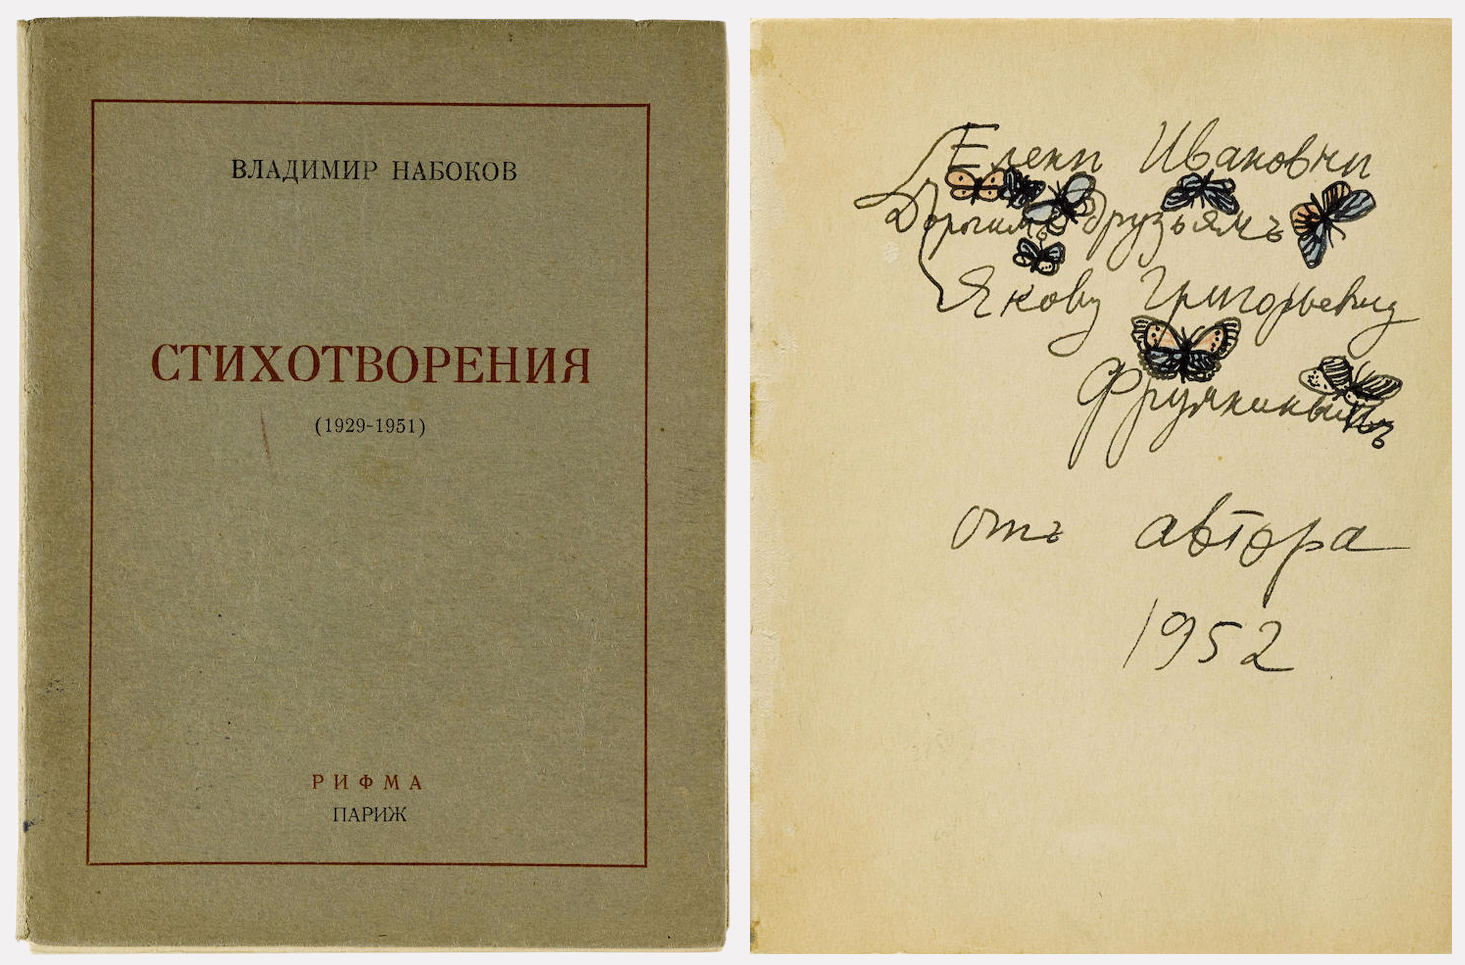 Сборник стихов Владимира Набокова, Париж, издательство «Рифма», 1952